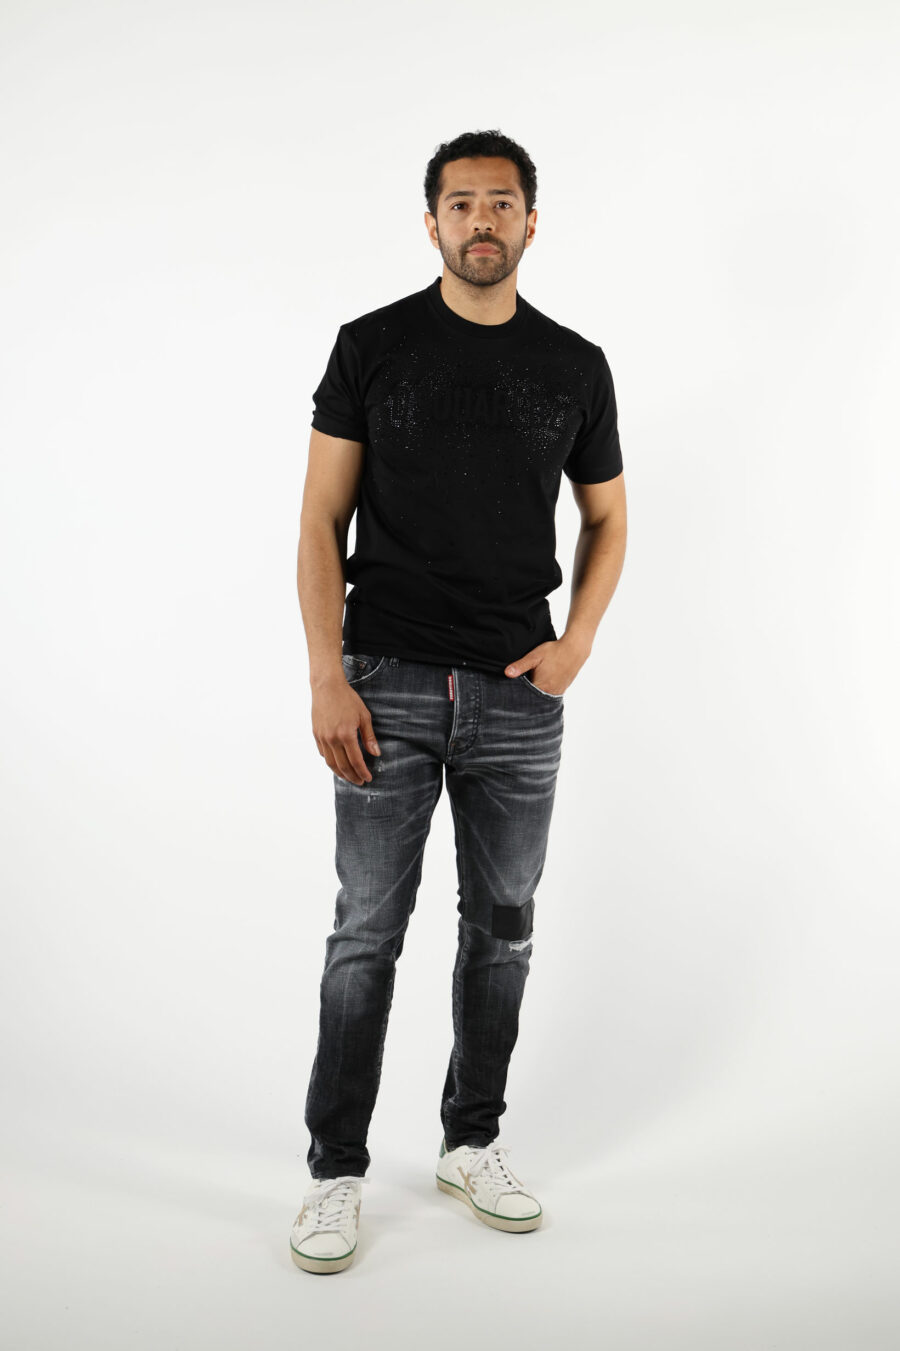 Pantalón vaquero negro "skater jean" con parche y semidesgastado - 111289